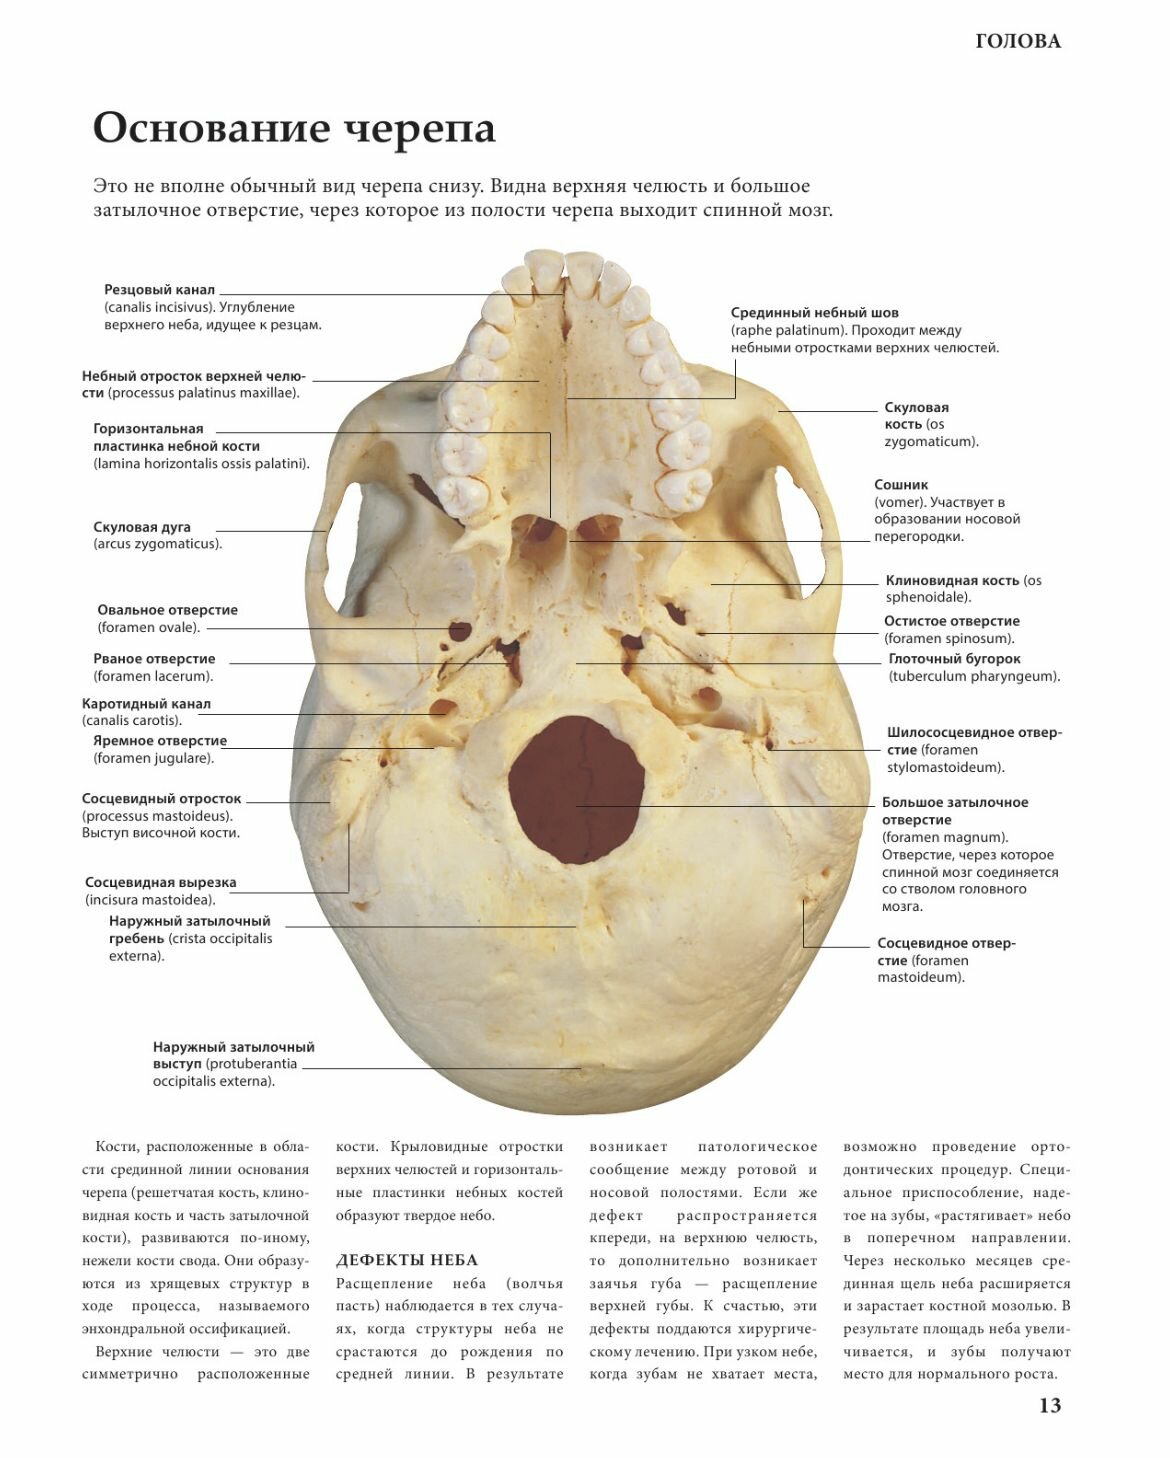 Анатомия человека. Тело. Как это работает - фото №20